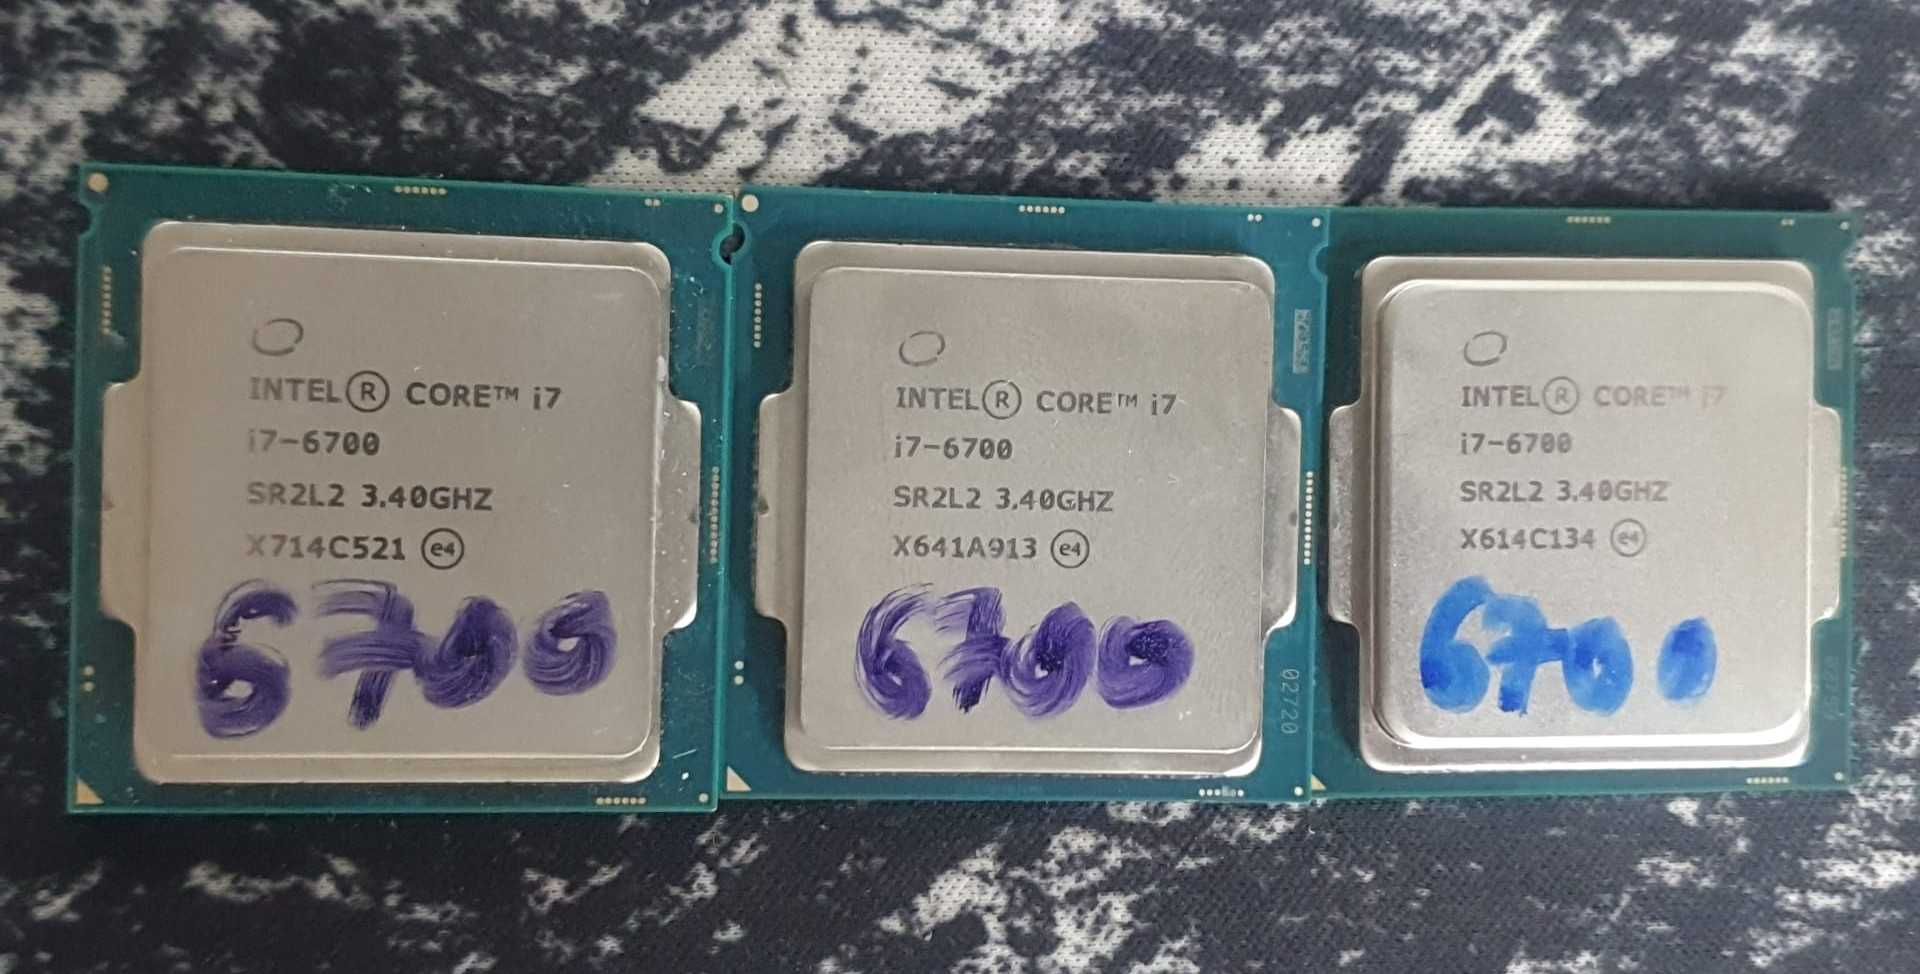 Procesor Intel Core i7 6700 sk 1151, cooler, pasta